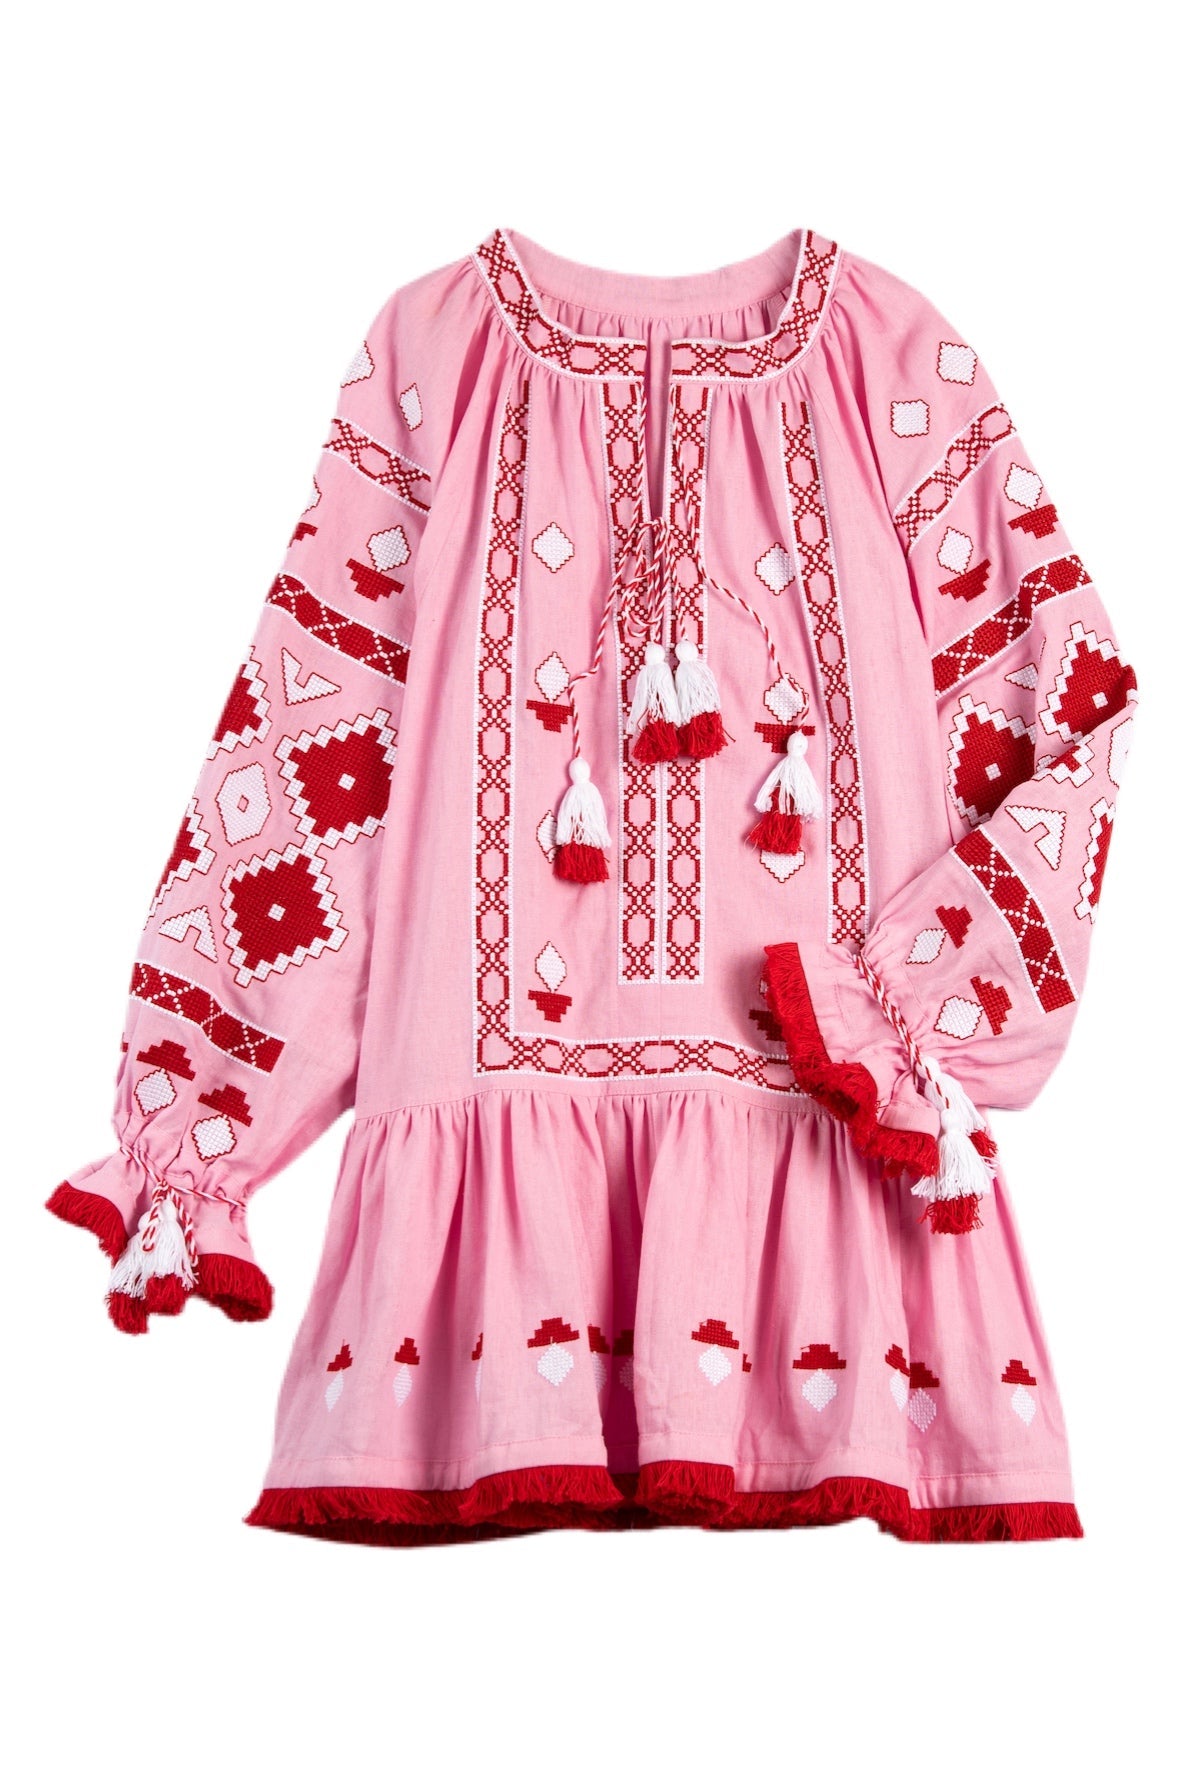 Nomeda Embroidered Ukrainian Dress - Pink, Red